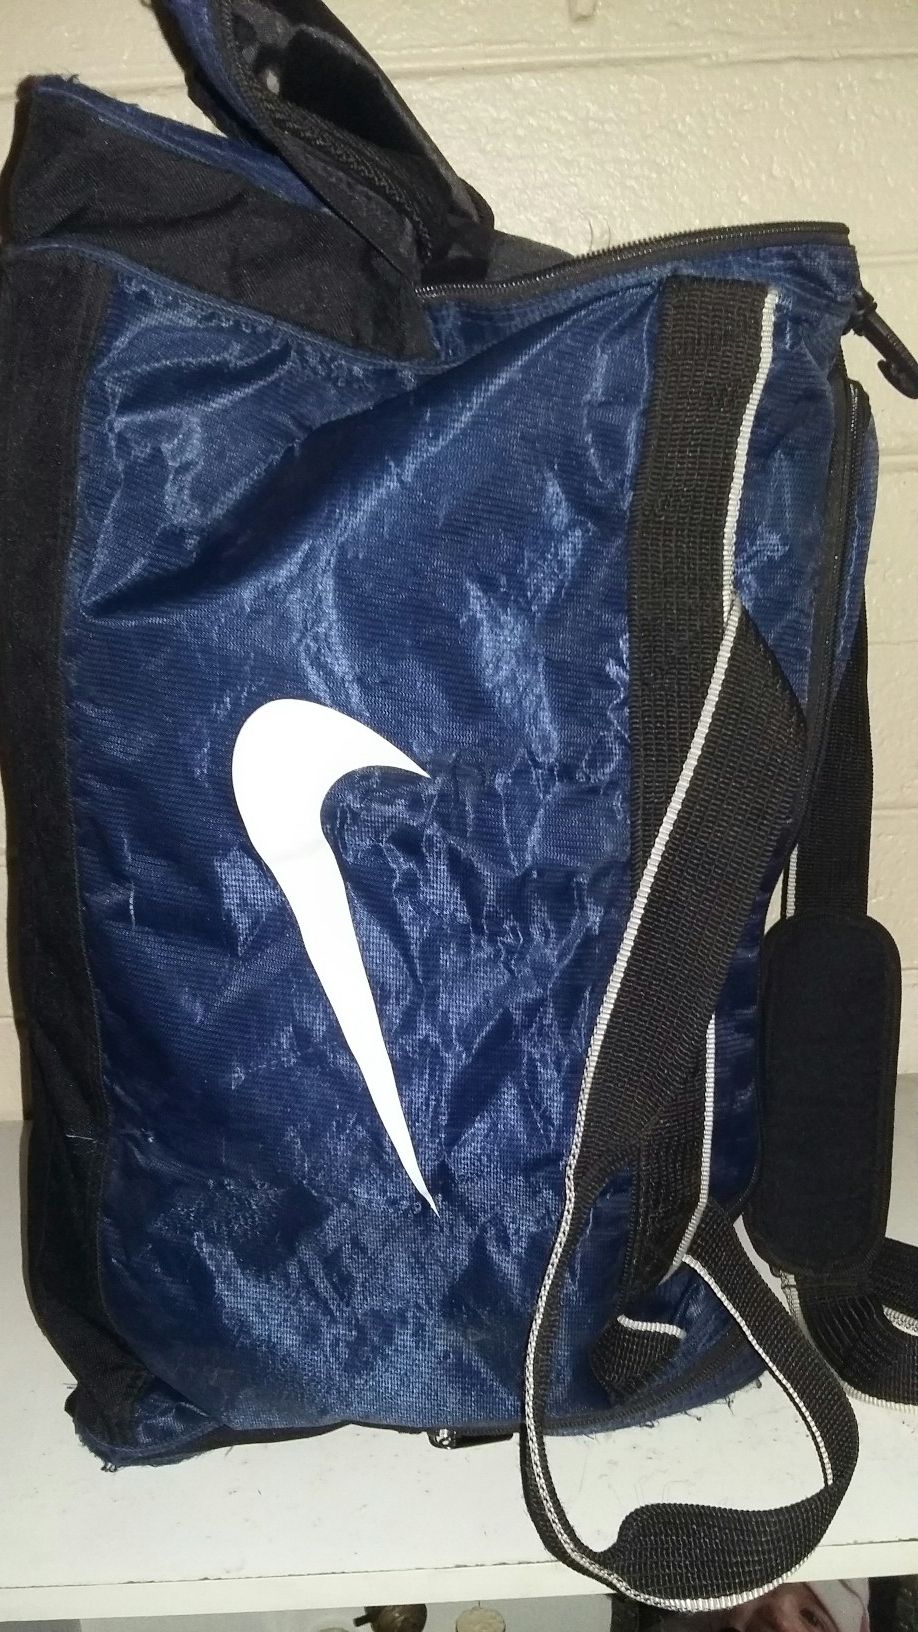 Big Nike duffle bag